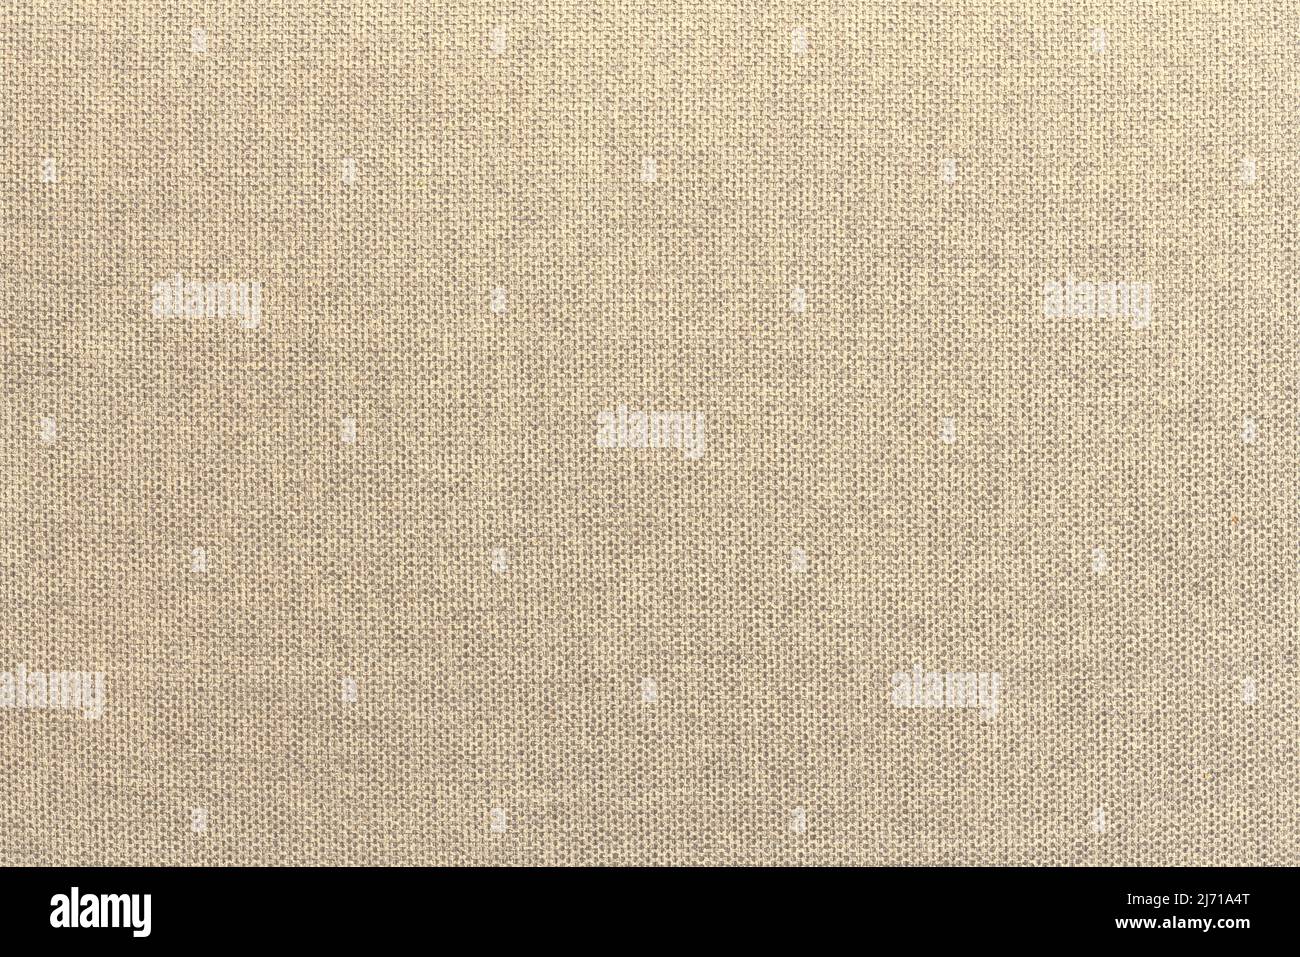 Toile de fond en tissu de tissu de coussin de canapé en coton beige. Photographie haute résolution Banque D'Images